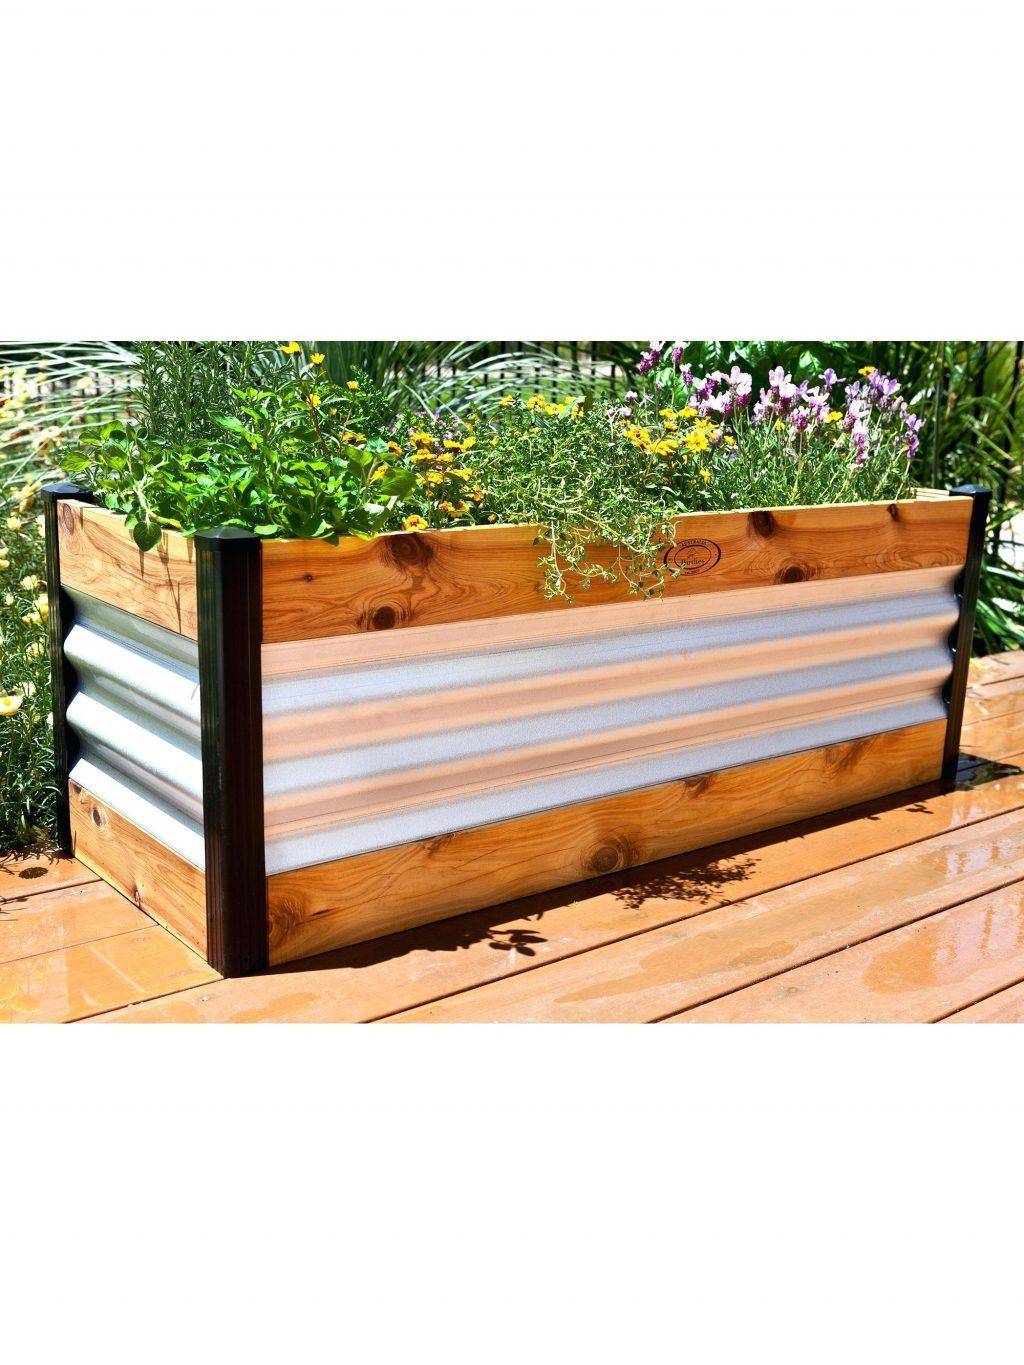 Demeter Corrugated Metal Elevated Raised Bed Gardenerscom